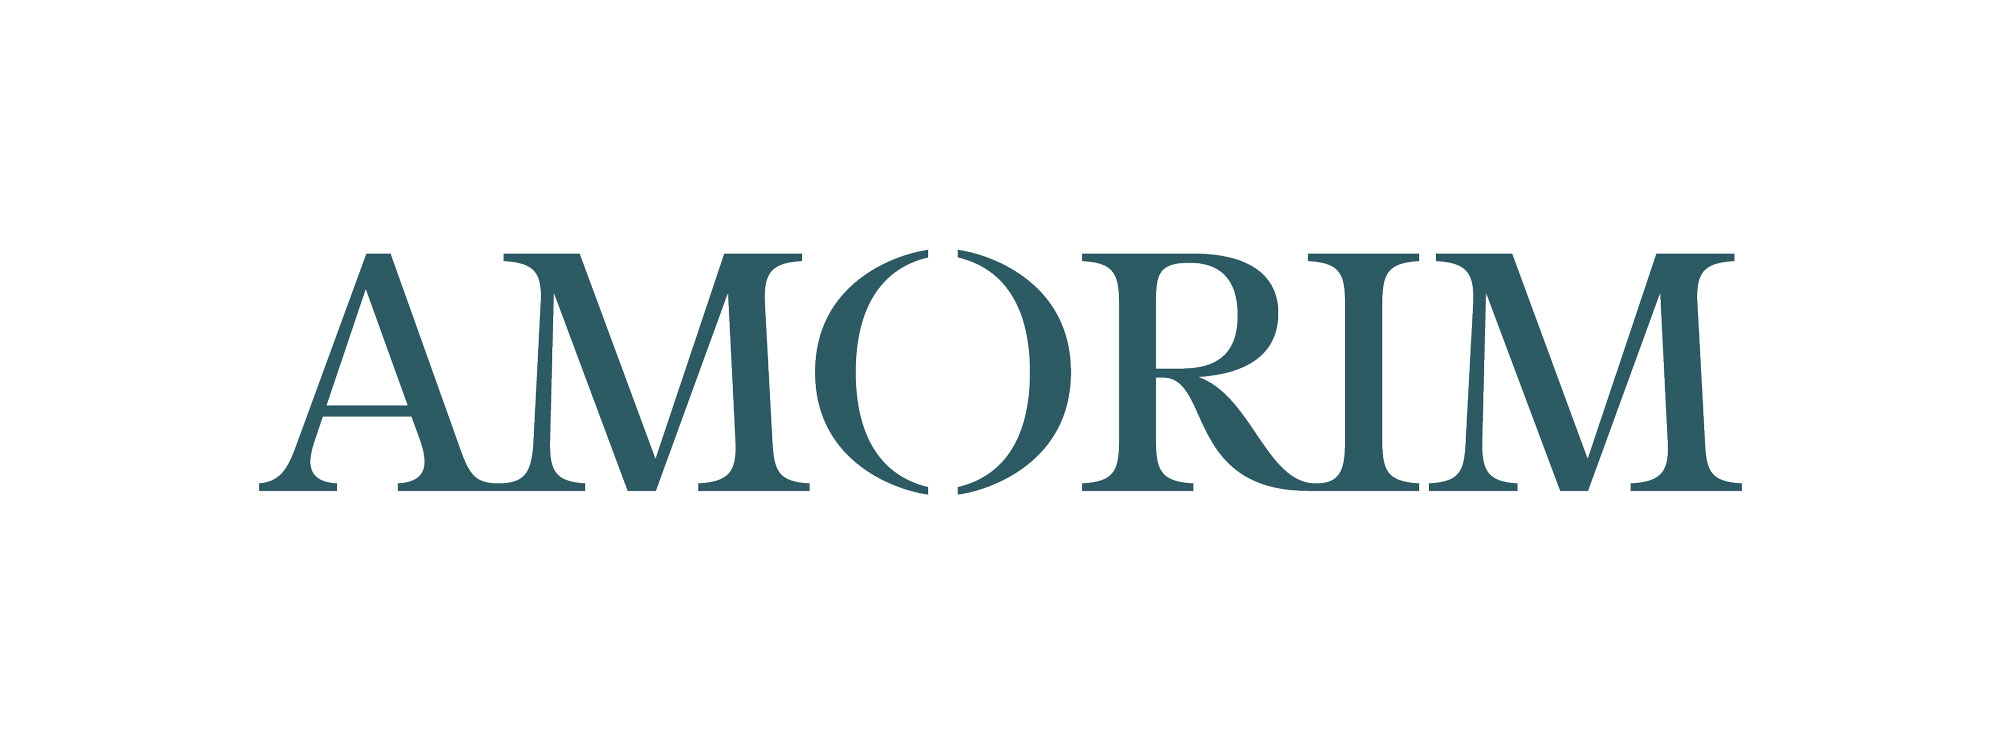 Amorim Ltd